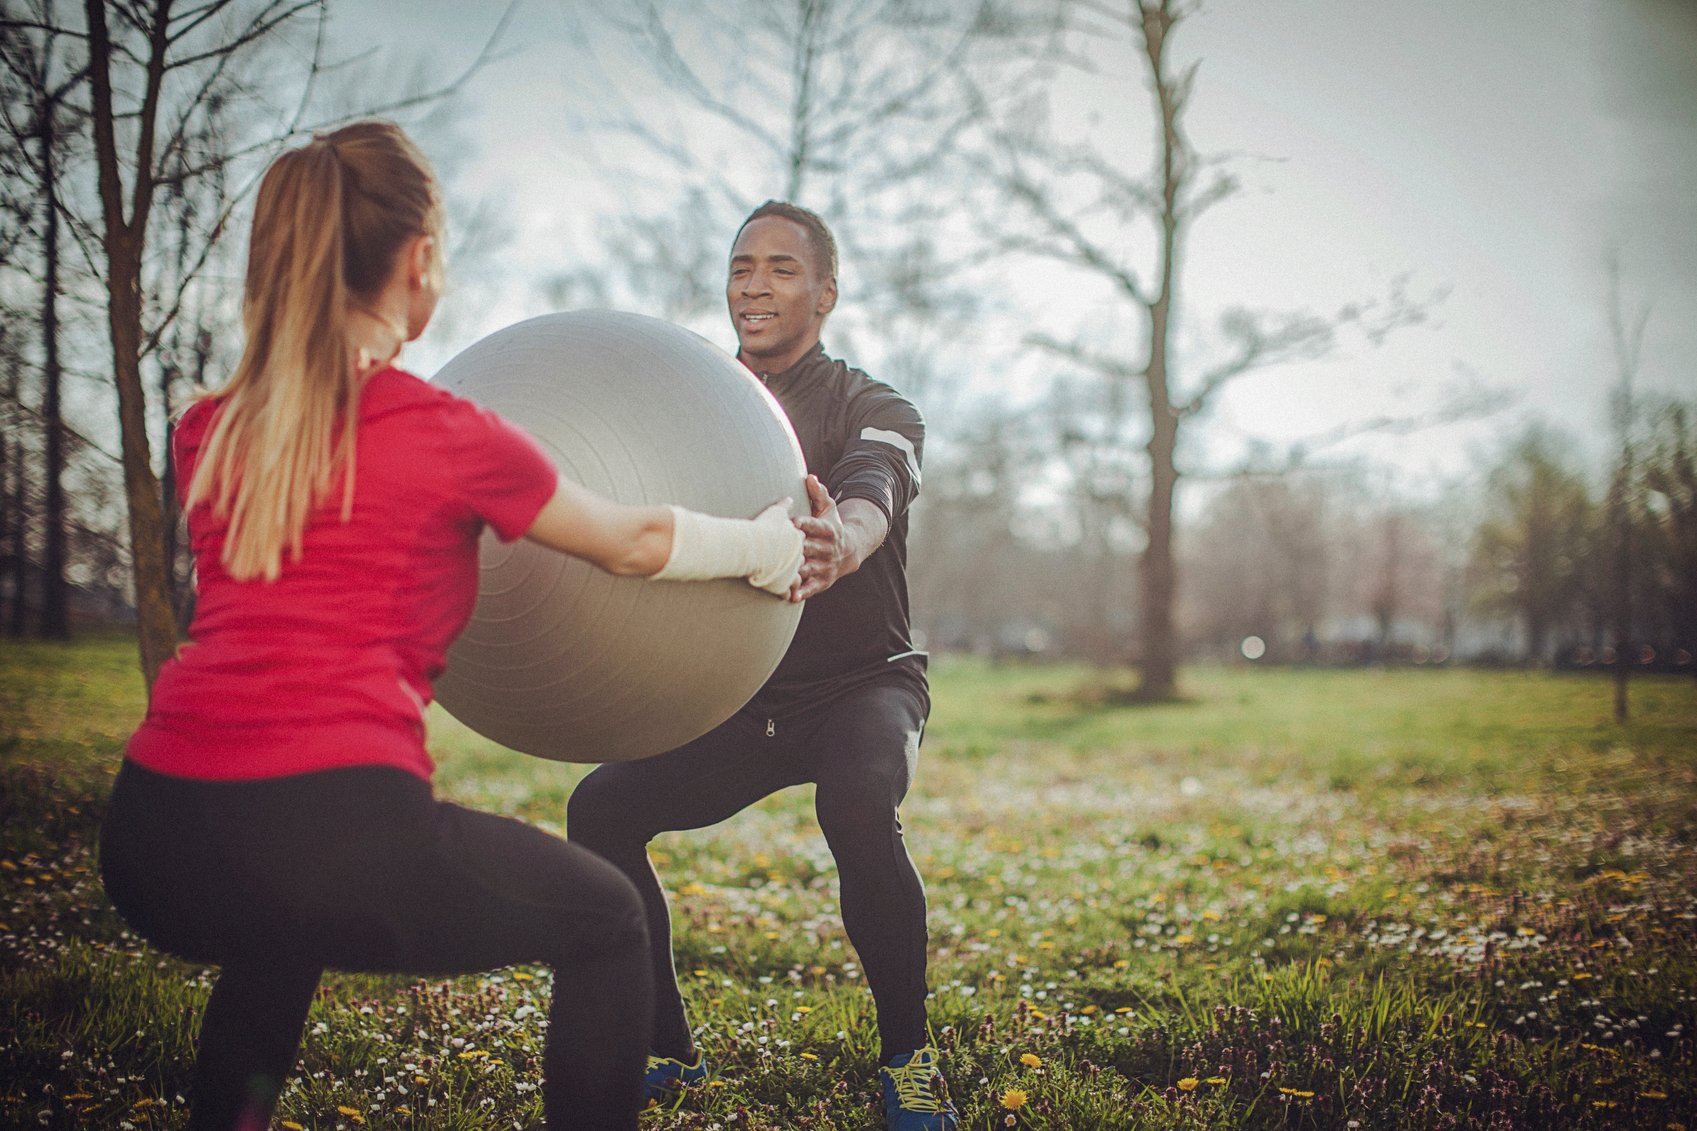 Mann og dame trener sammen med stor ball utendørs